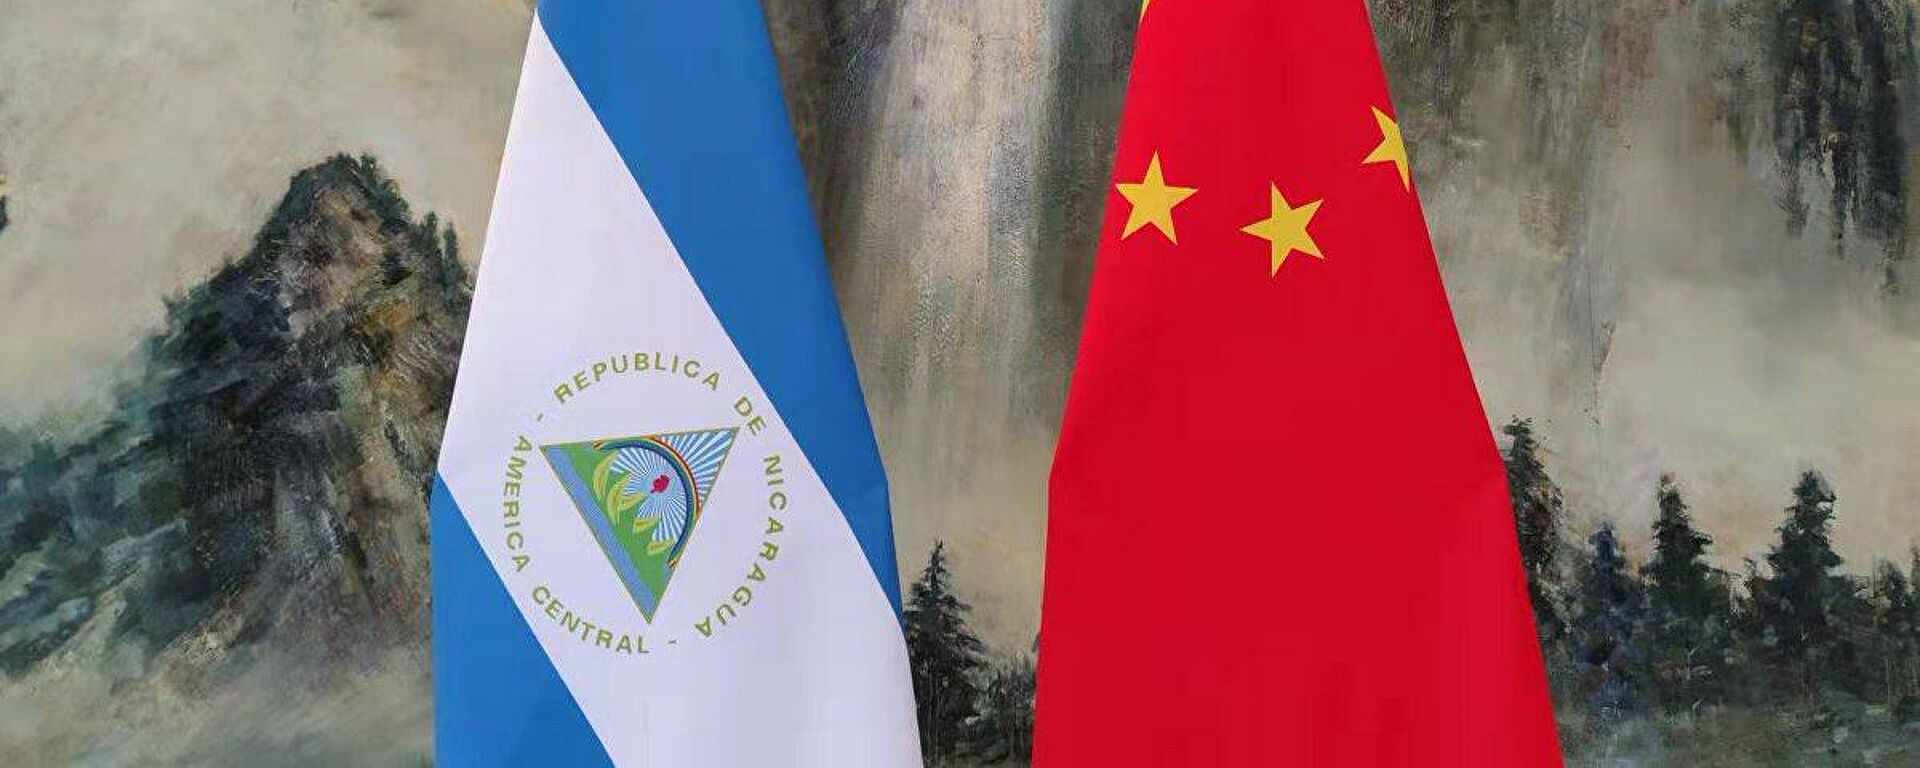 Nicaragua respalda la defensa de los derechos soberanos de la República Popular China